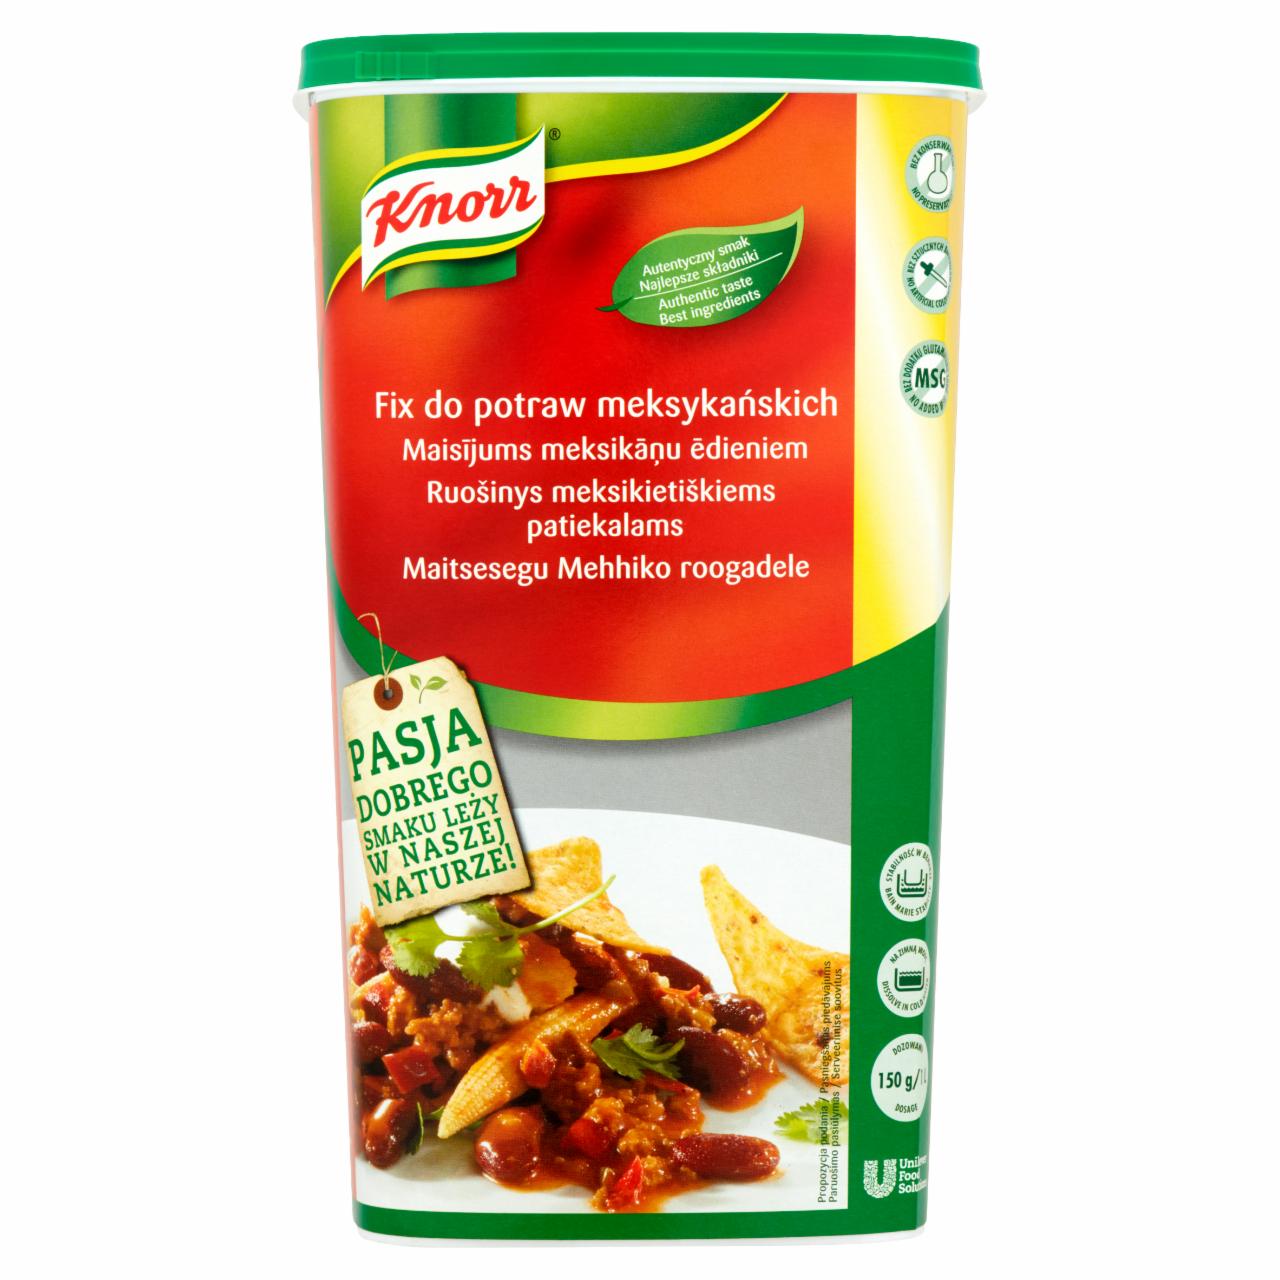 Zdjęcia - Knorr Fix do potraw meksykańskich 1,2 kg